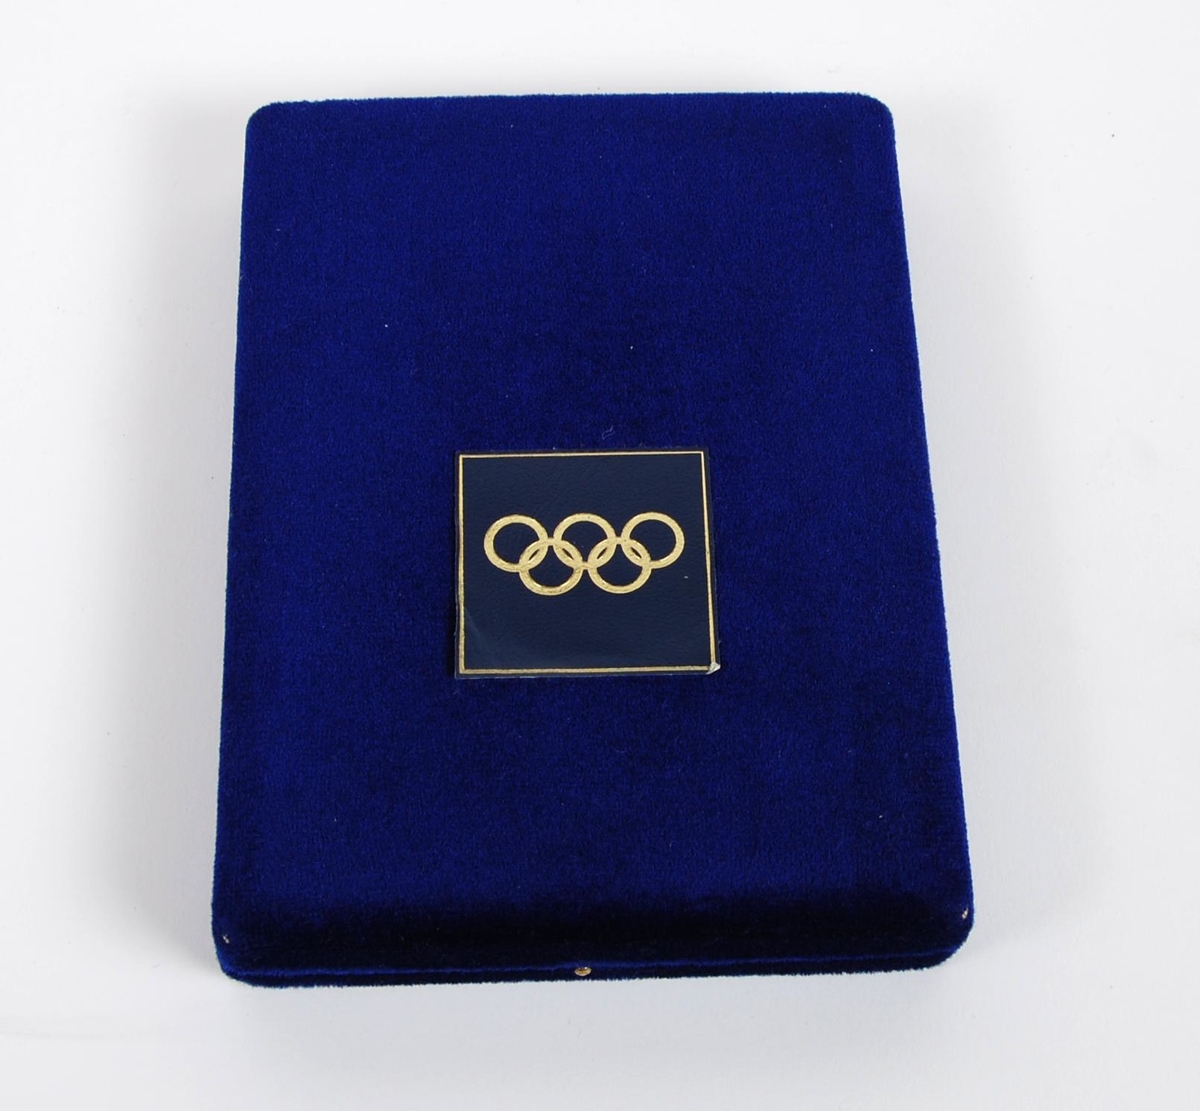 Medaljesett bestående av to gullfargede medaljer; en stor og en liten med opphengsbånd. Begge medaljene er preget med de olympiske ringene. De ligger i en blå eske. Esken har de olympiske ringene på lokket.